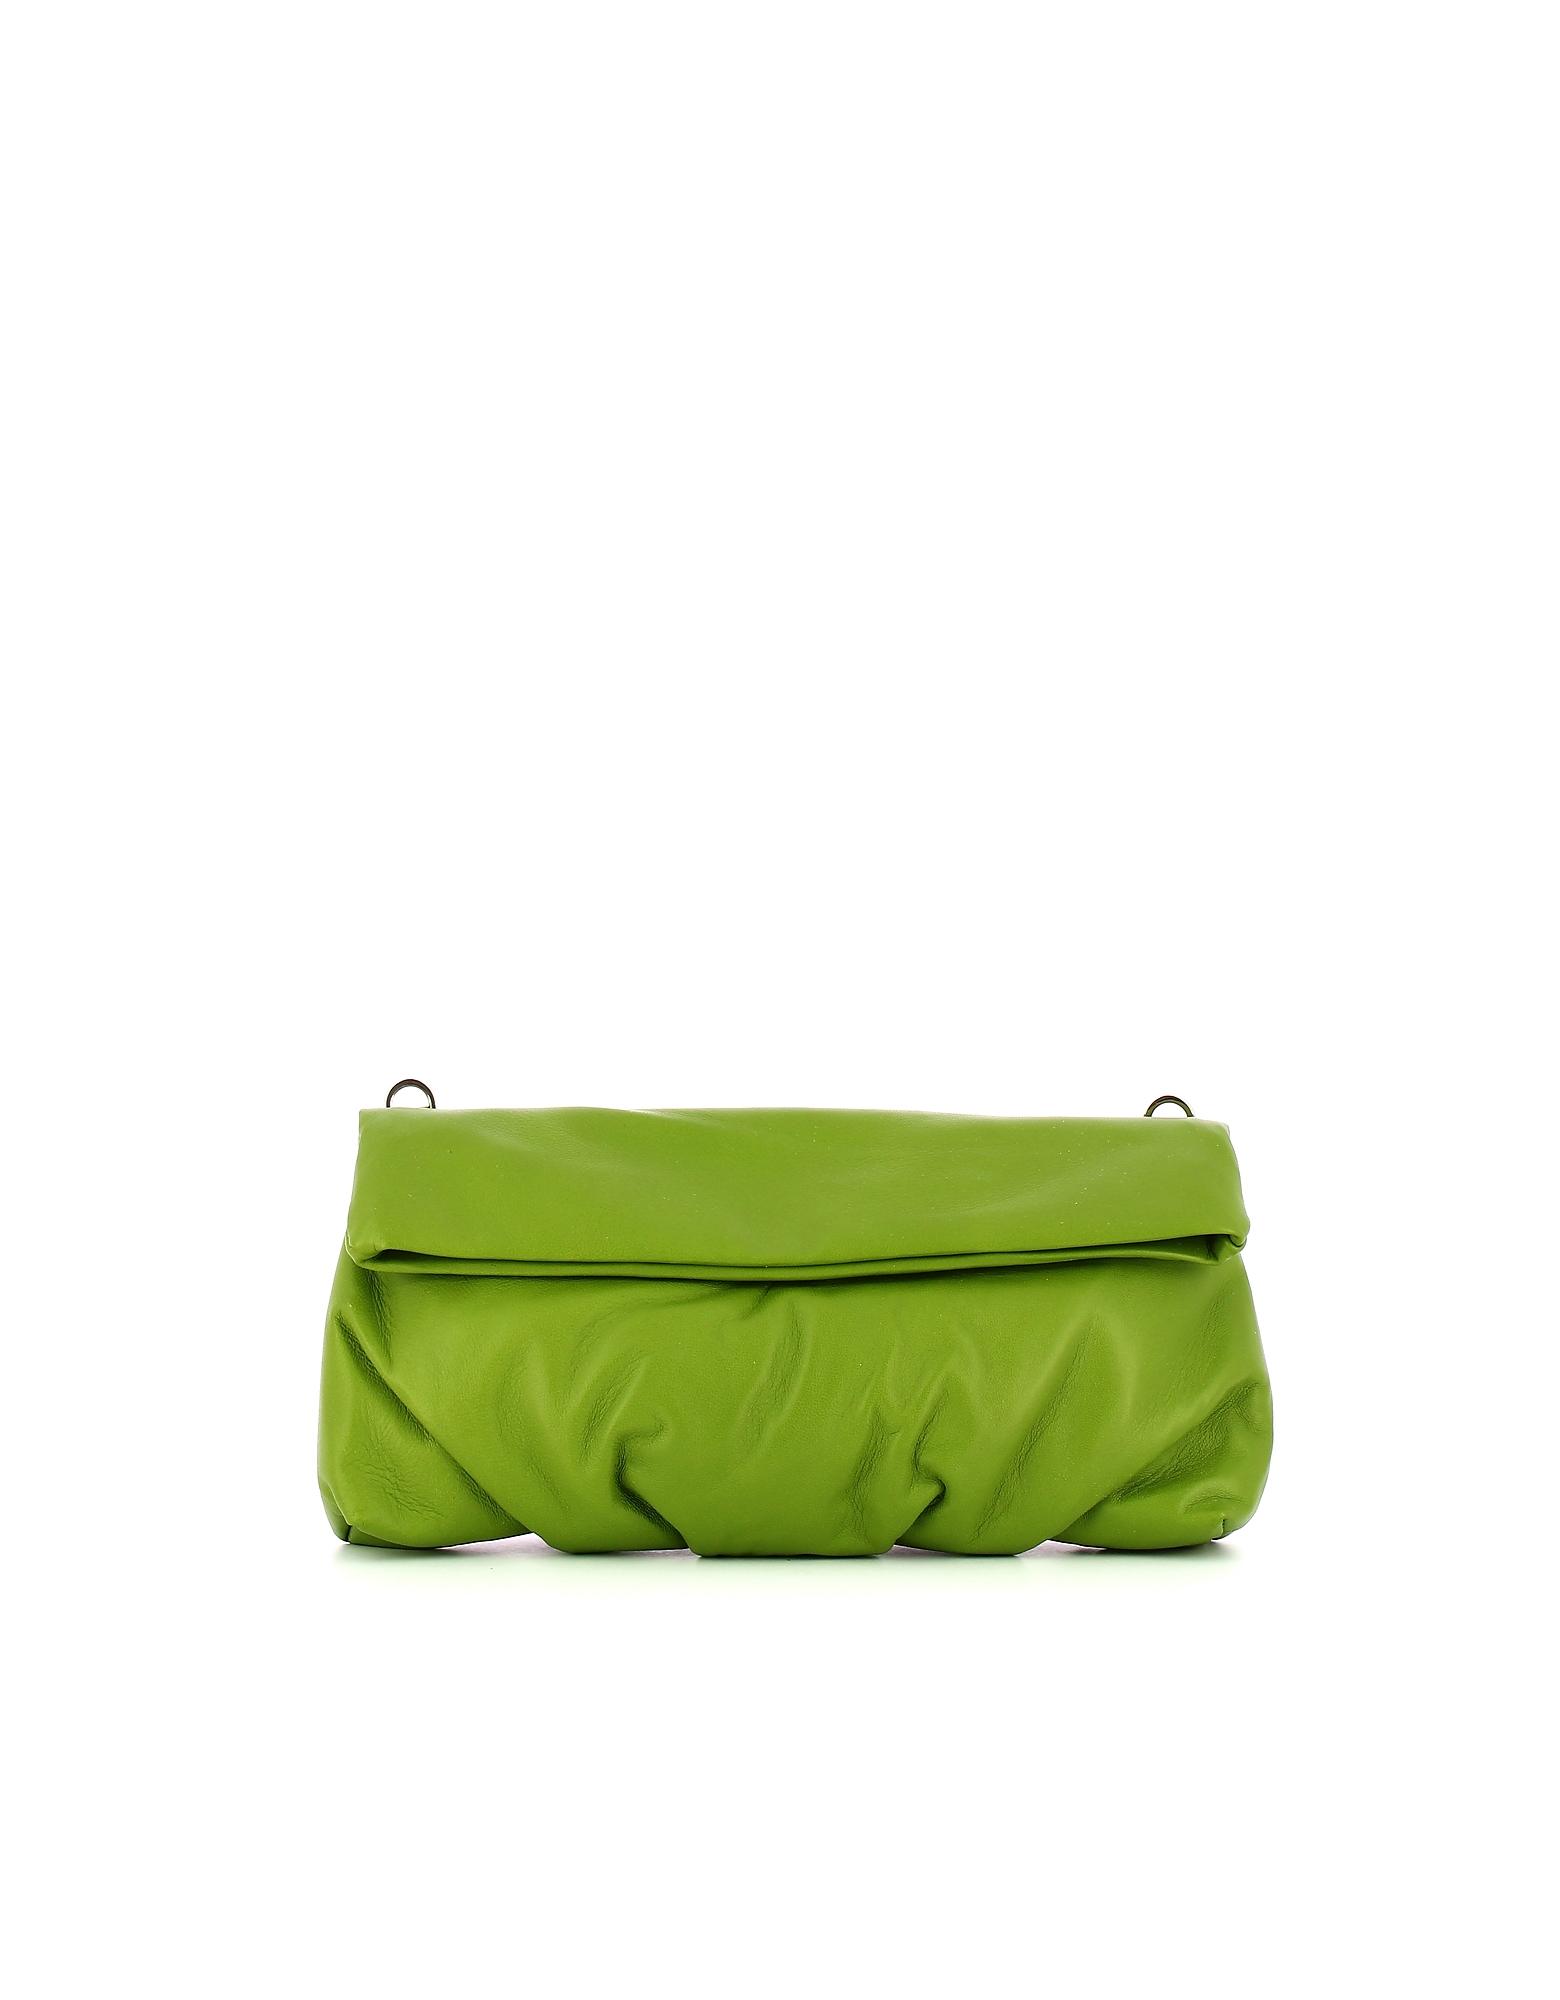 Gianni Chiarini Designer Handbags Women's Green Bag In Vert